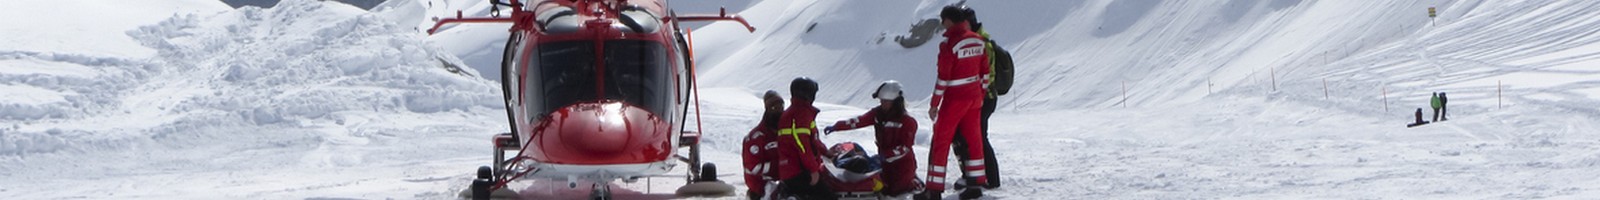 Une hausse de +4 % des accidents de ski en quatre ans